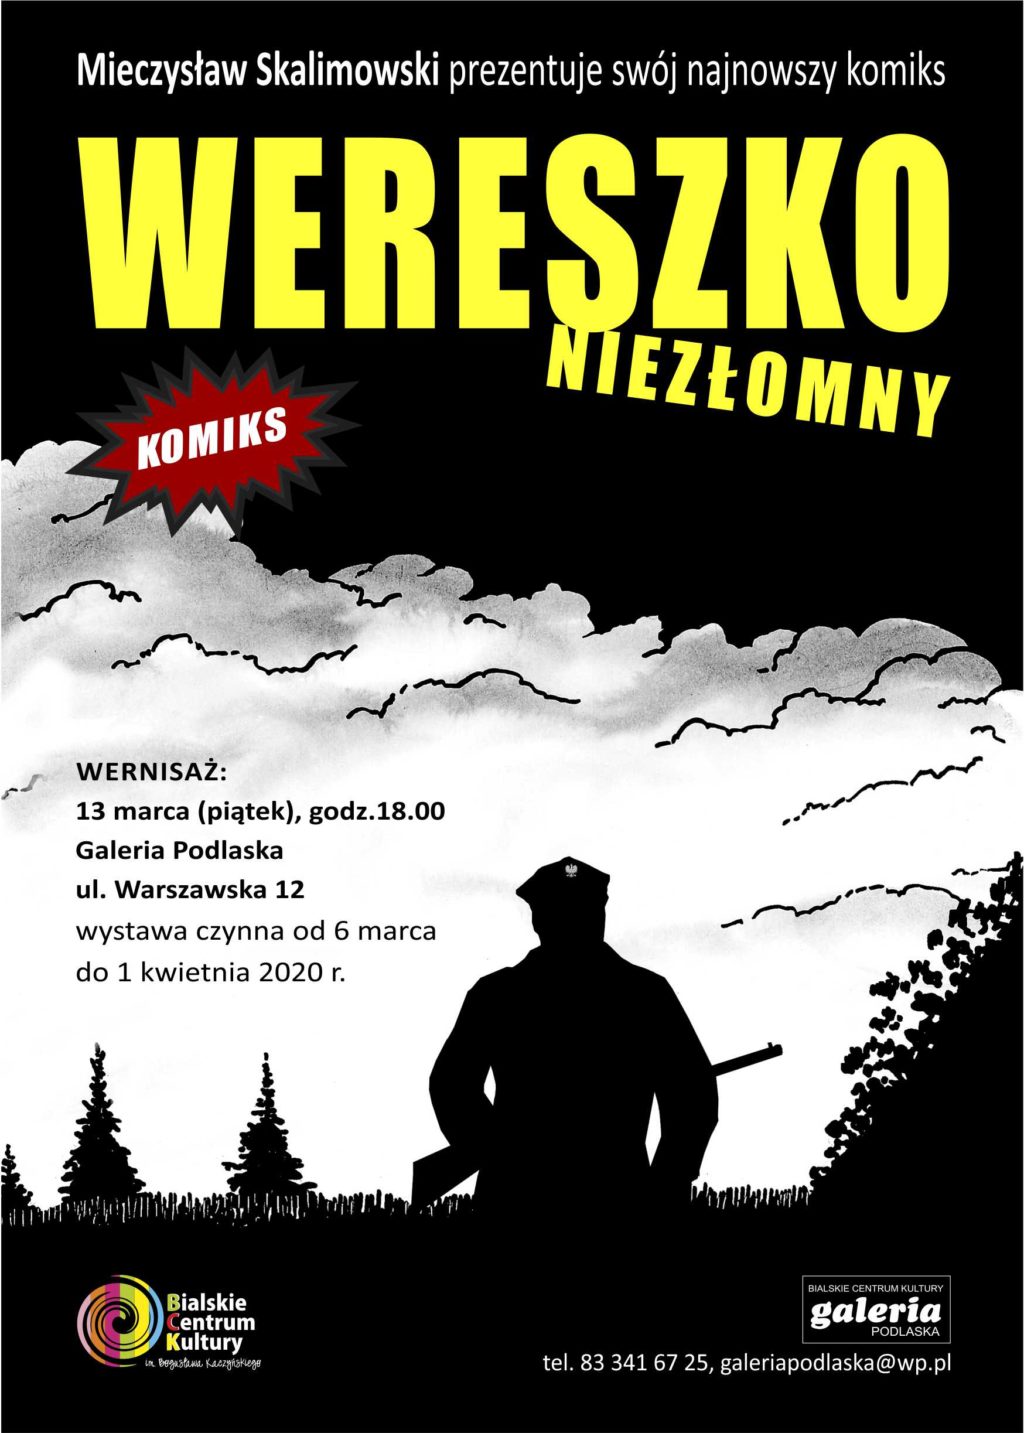 Prezentacja komiksu Mieczysława Skalimowskiego